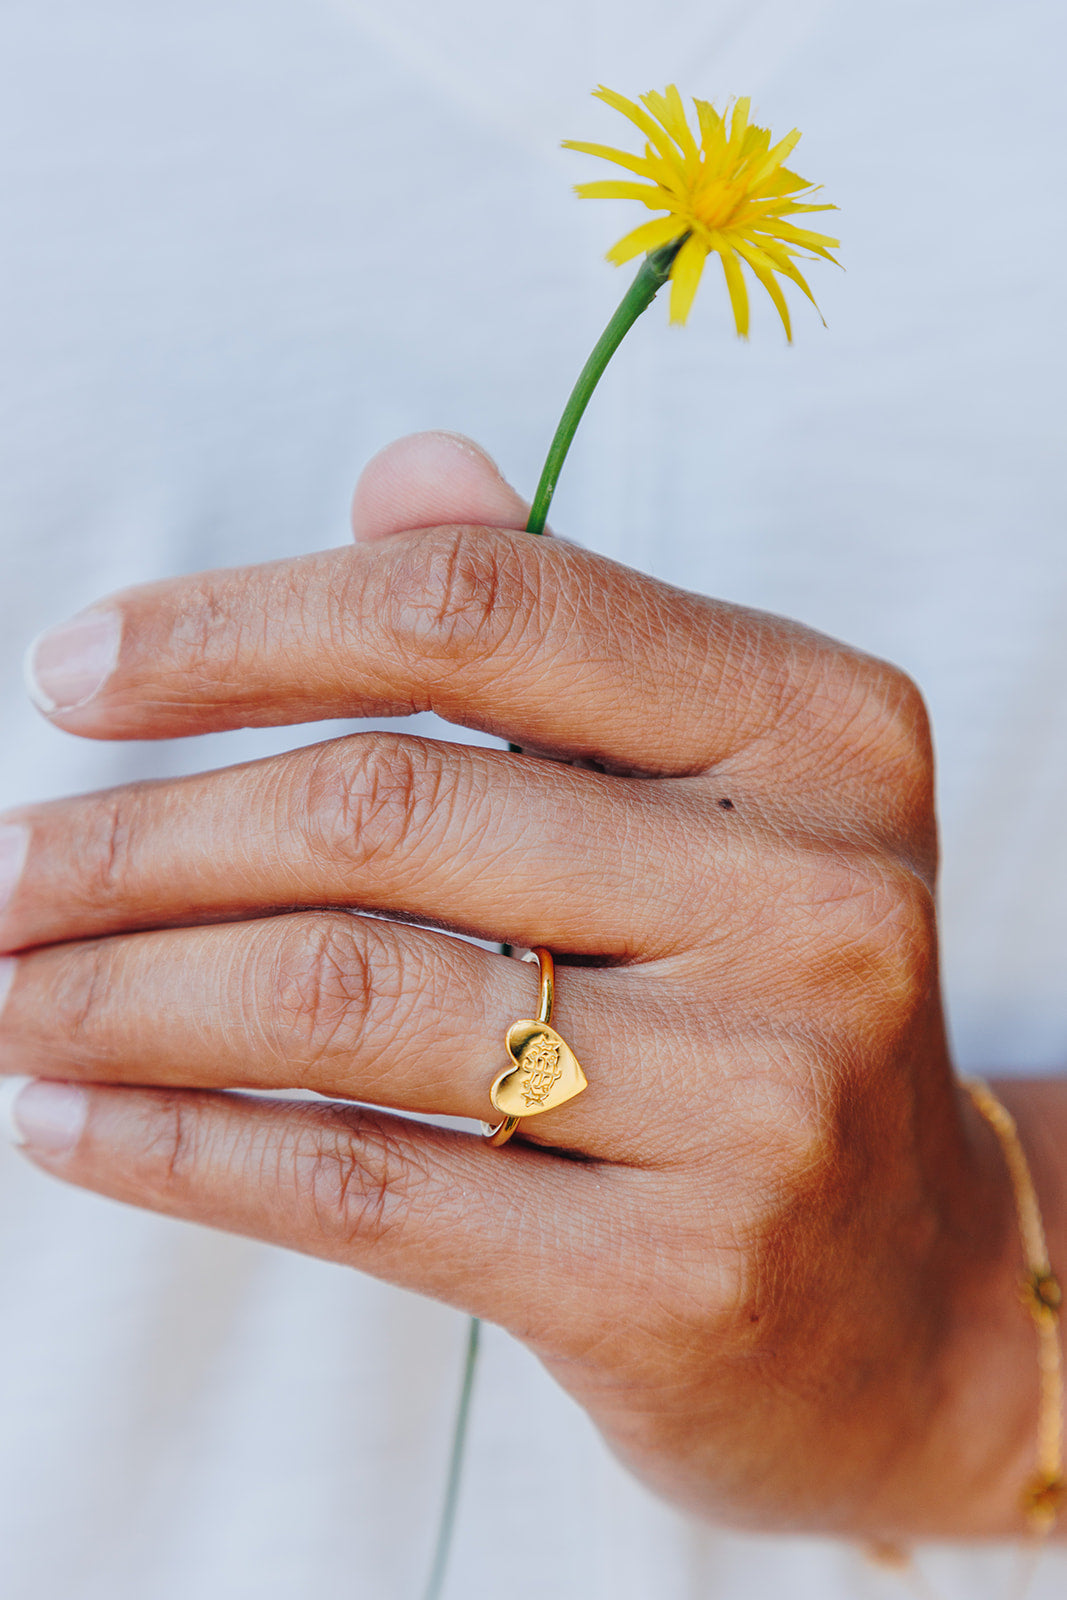 simple gold heart bahai ringstone ring holding yellow dandelion flower